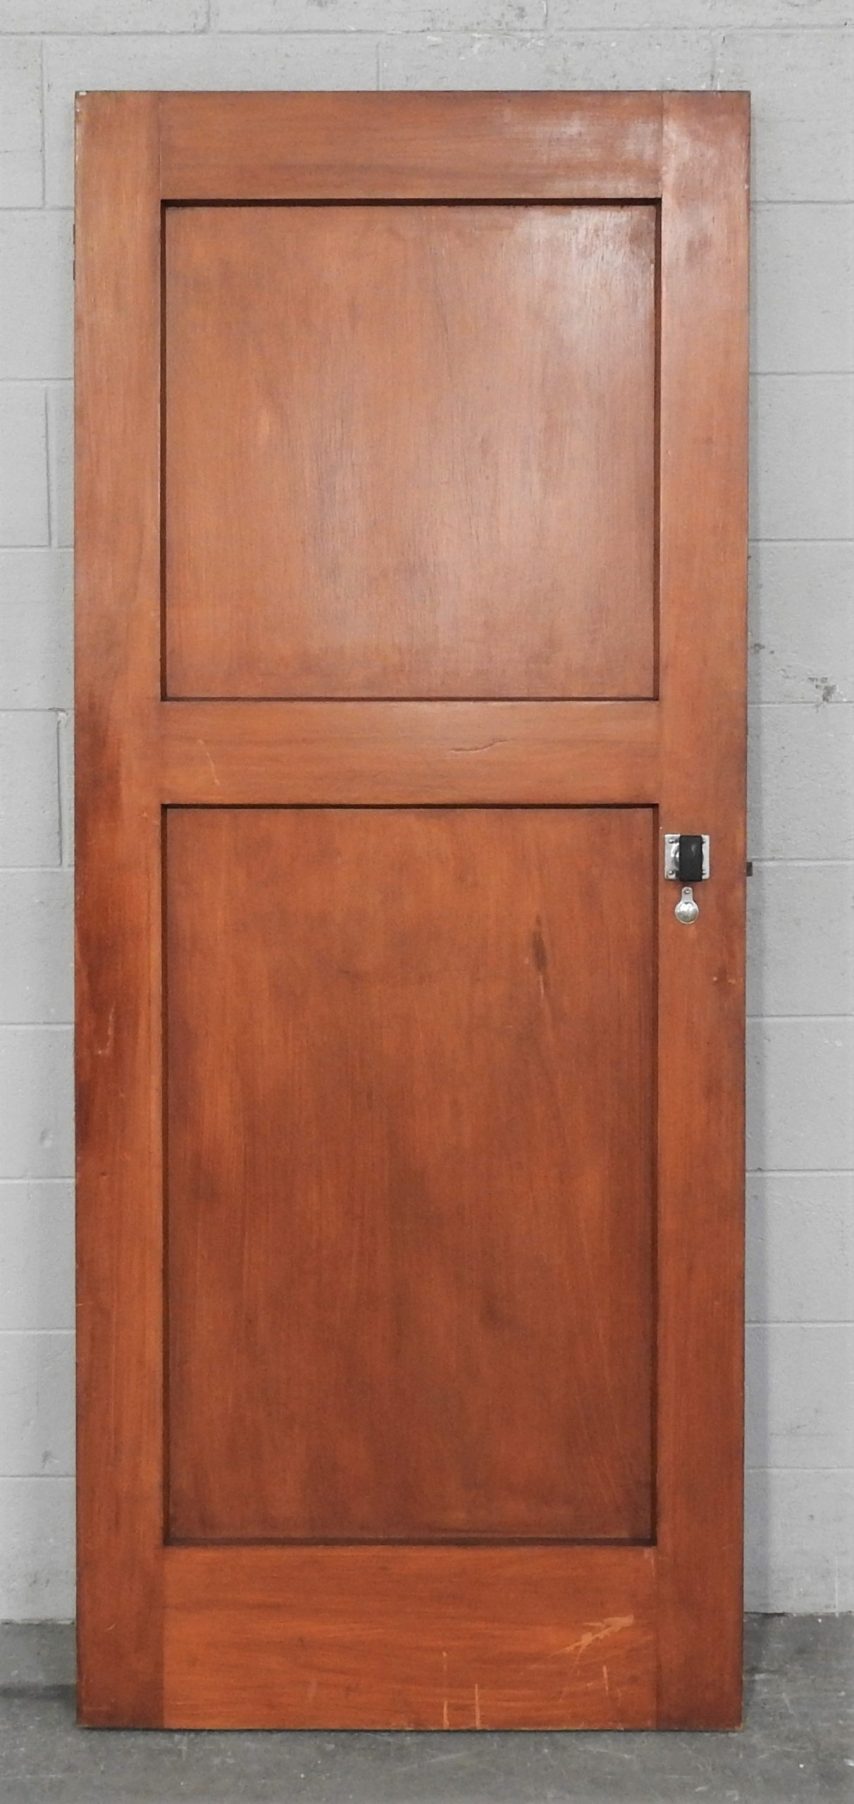 Wooden Bungalow Interior 2 Panel Door - Unhung